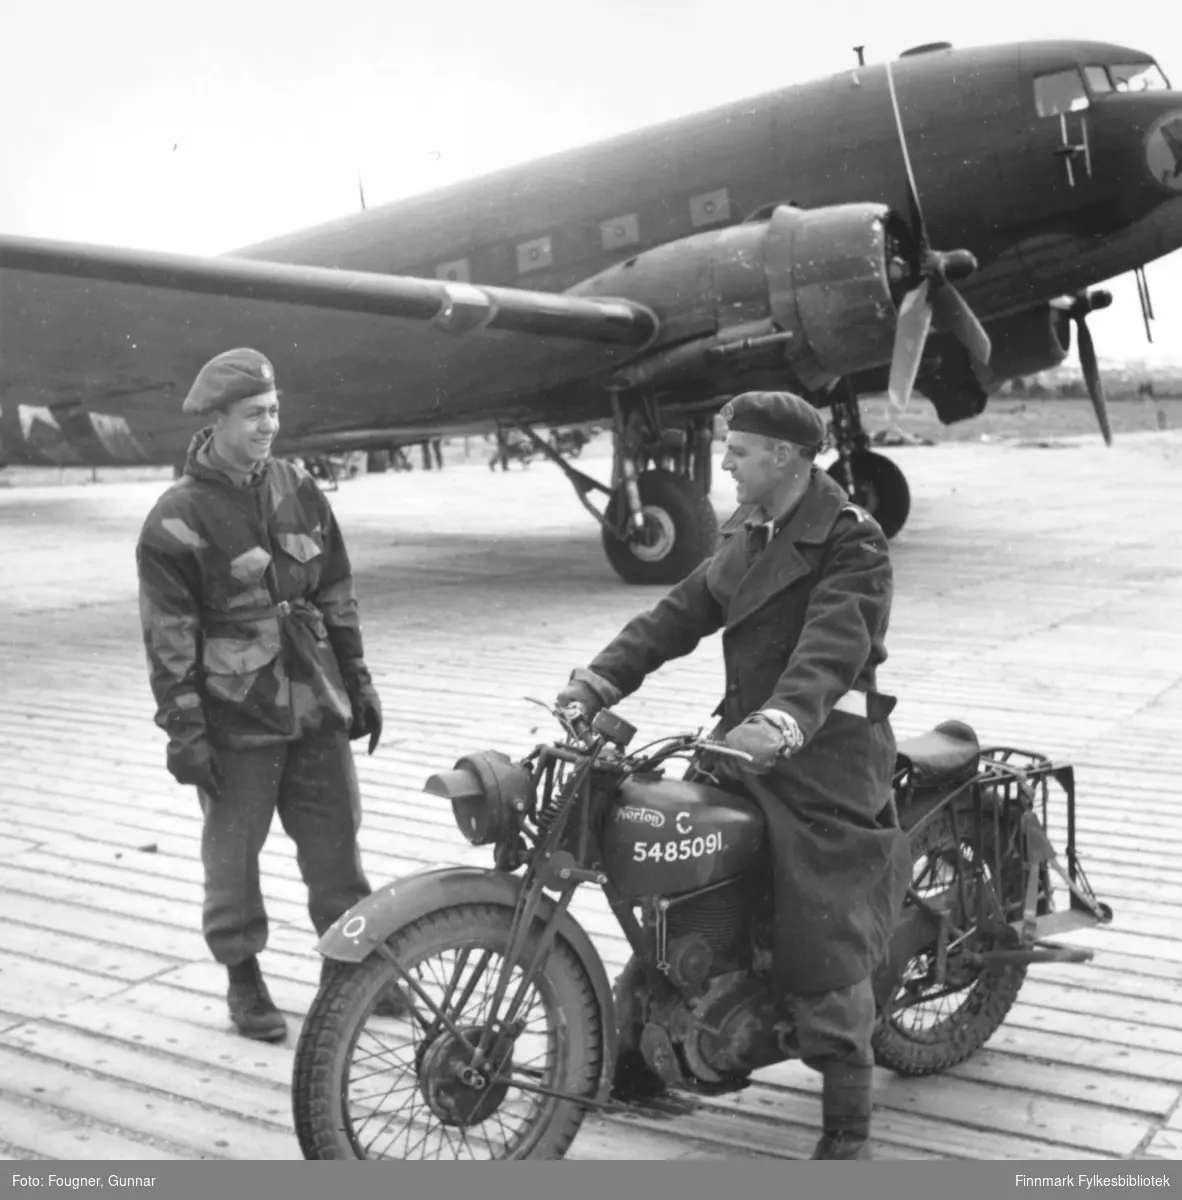 På Banak flyplass. En soldat og en offiser i uniformer. Offiseren sitter på en 'Norton' motorsykkel. I bakgrunnen står et militært fly av typen C-47, Dakota.